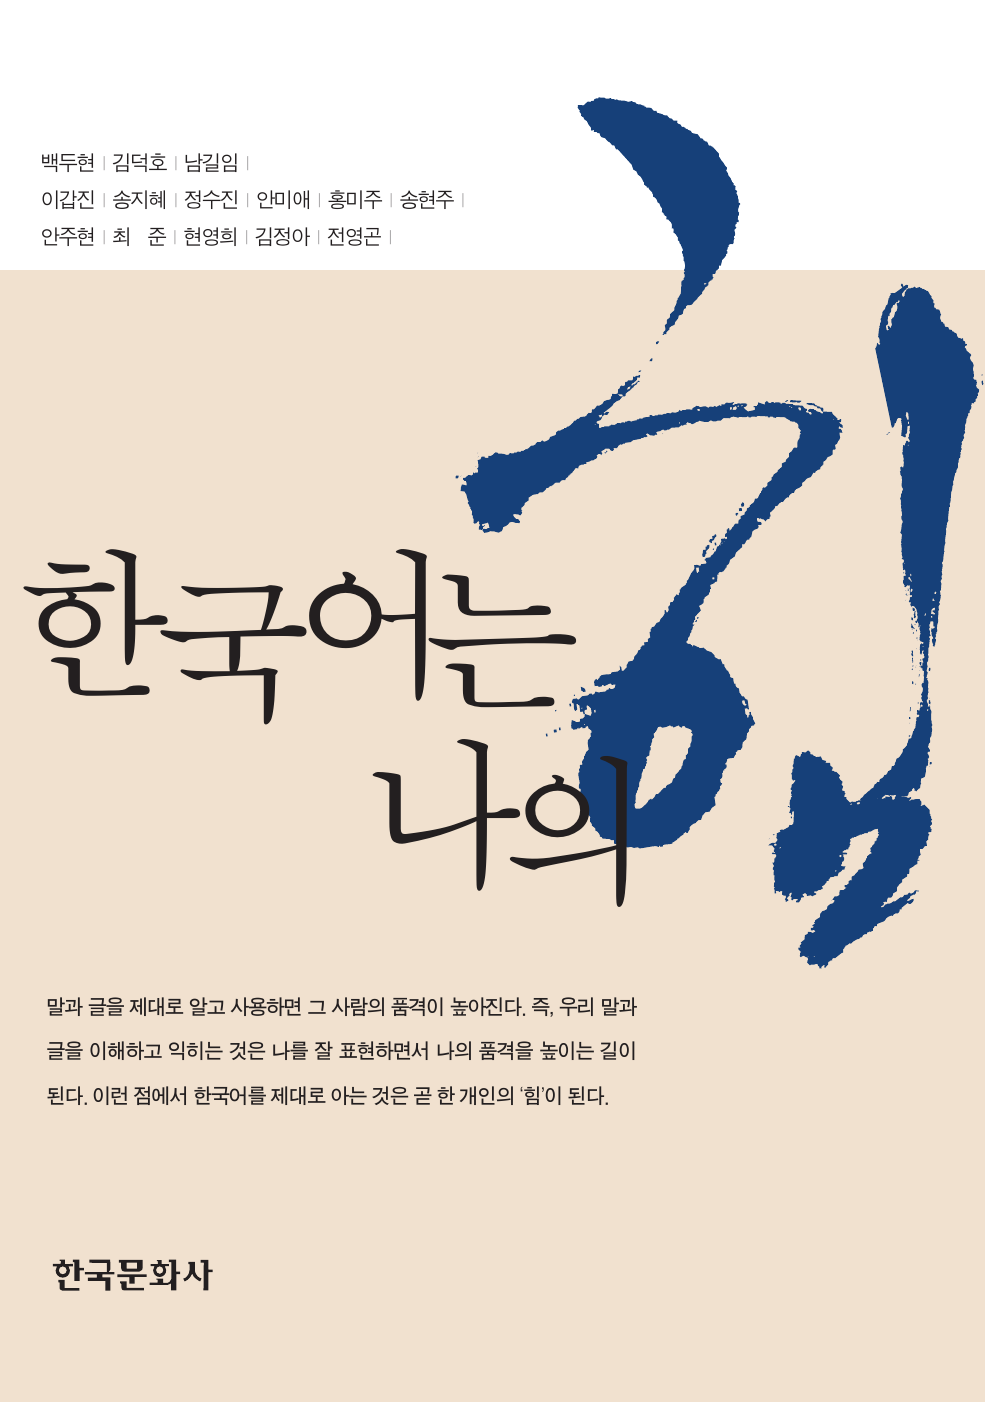 한국어는 나의 힘